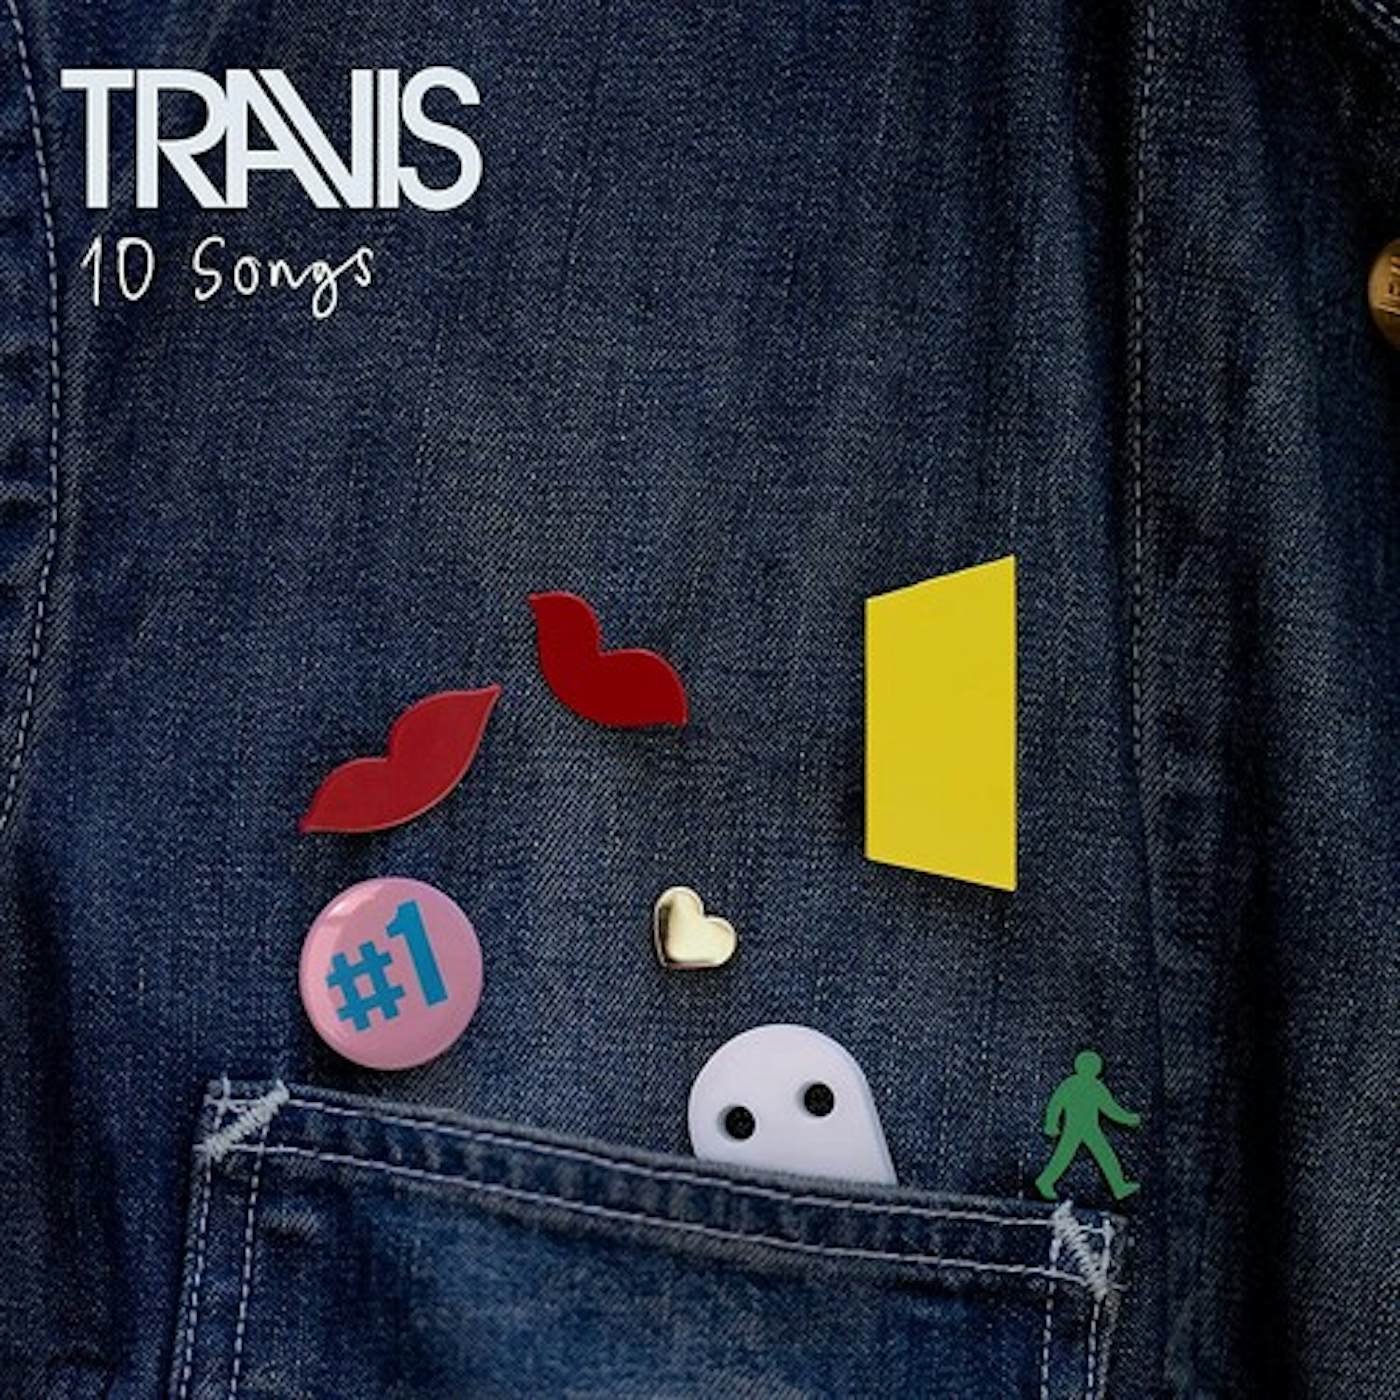 Travis 10 SONGS CD